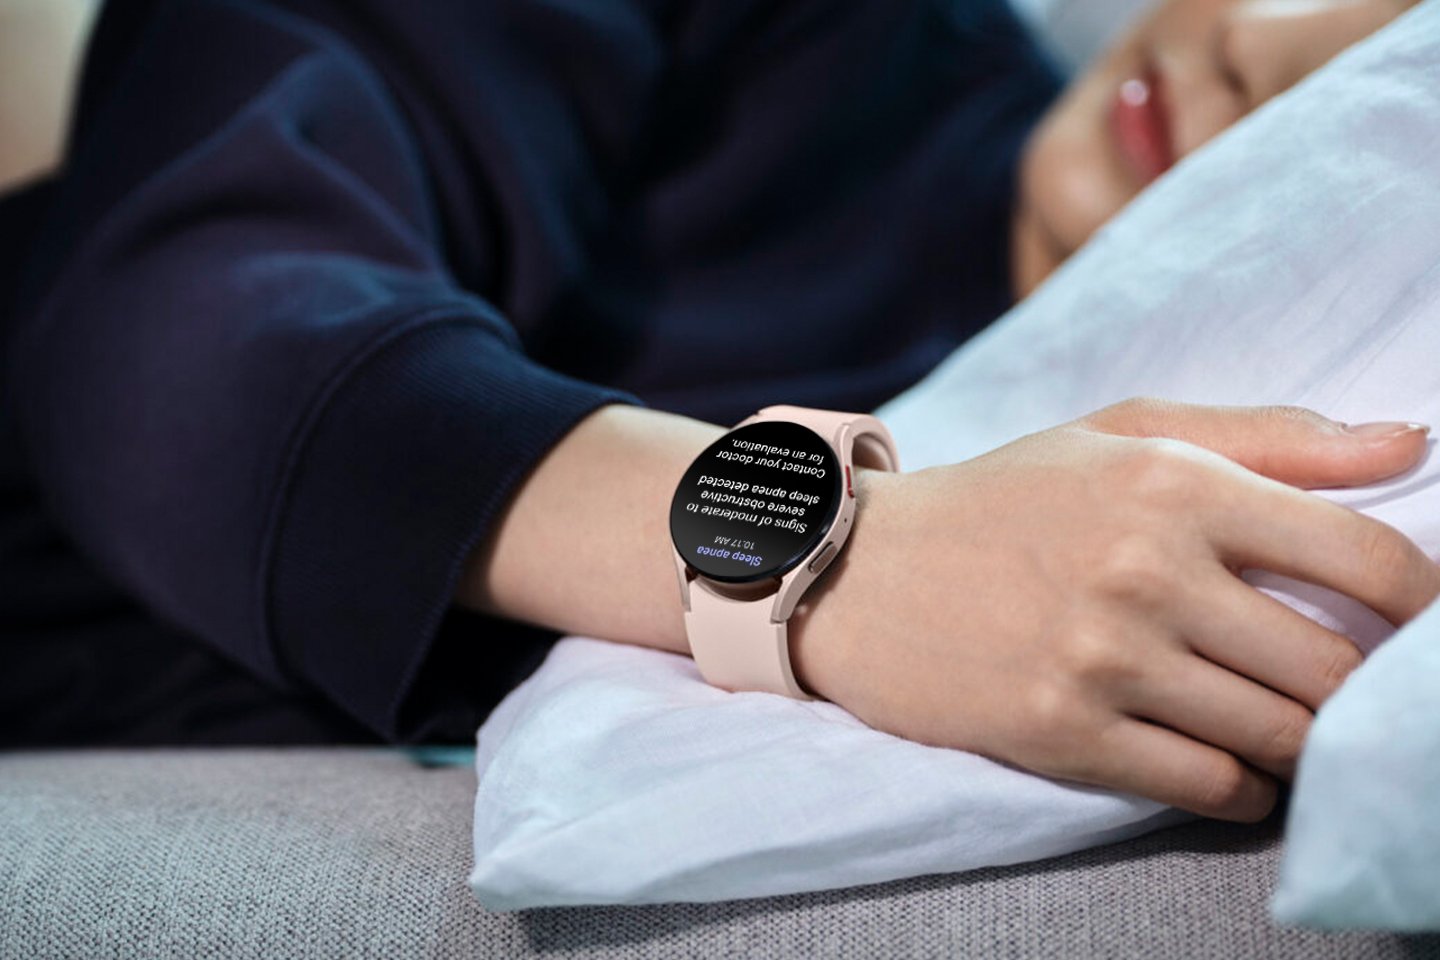 Samsung pokonał Apple w walce o zatwierdzenie przez FDA funkcji wykrywania bezdechu sennego w Galaxy Watch